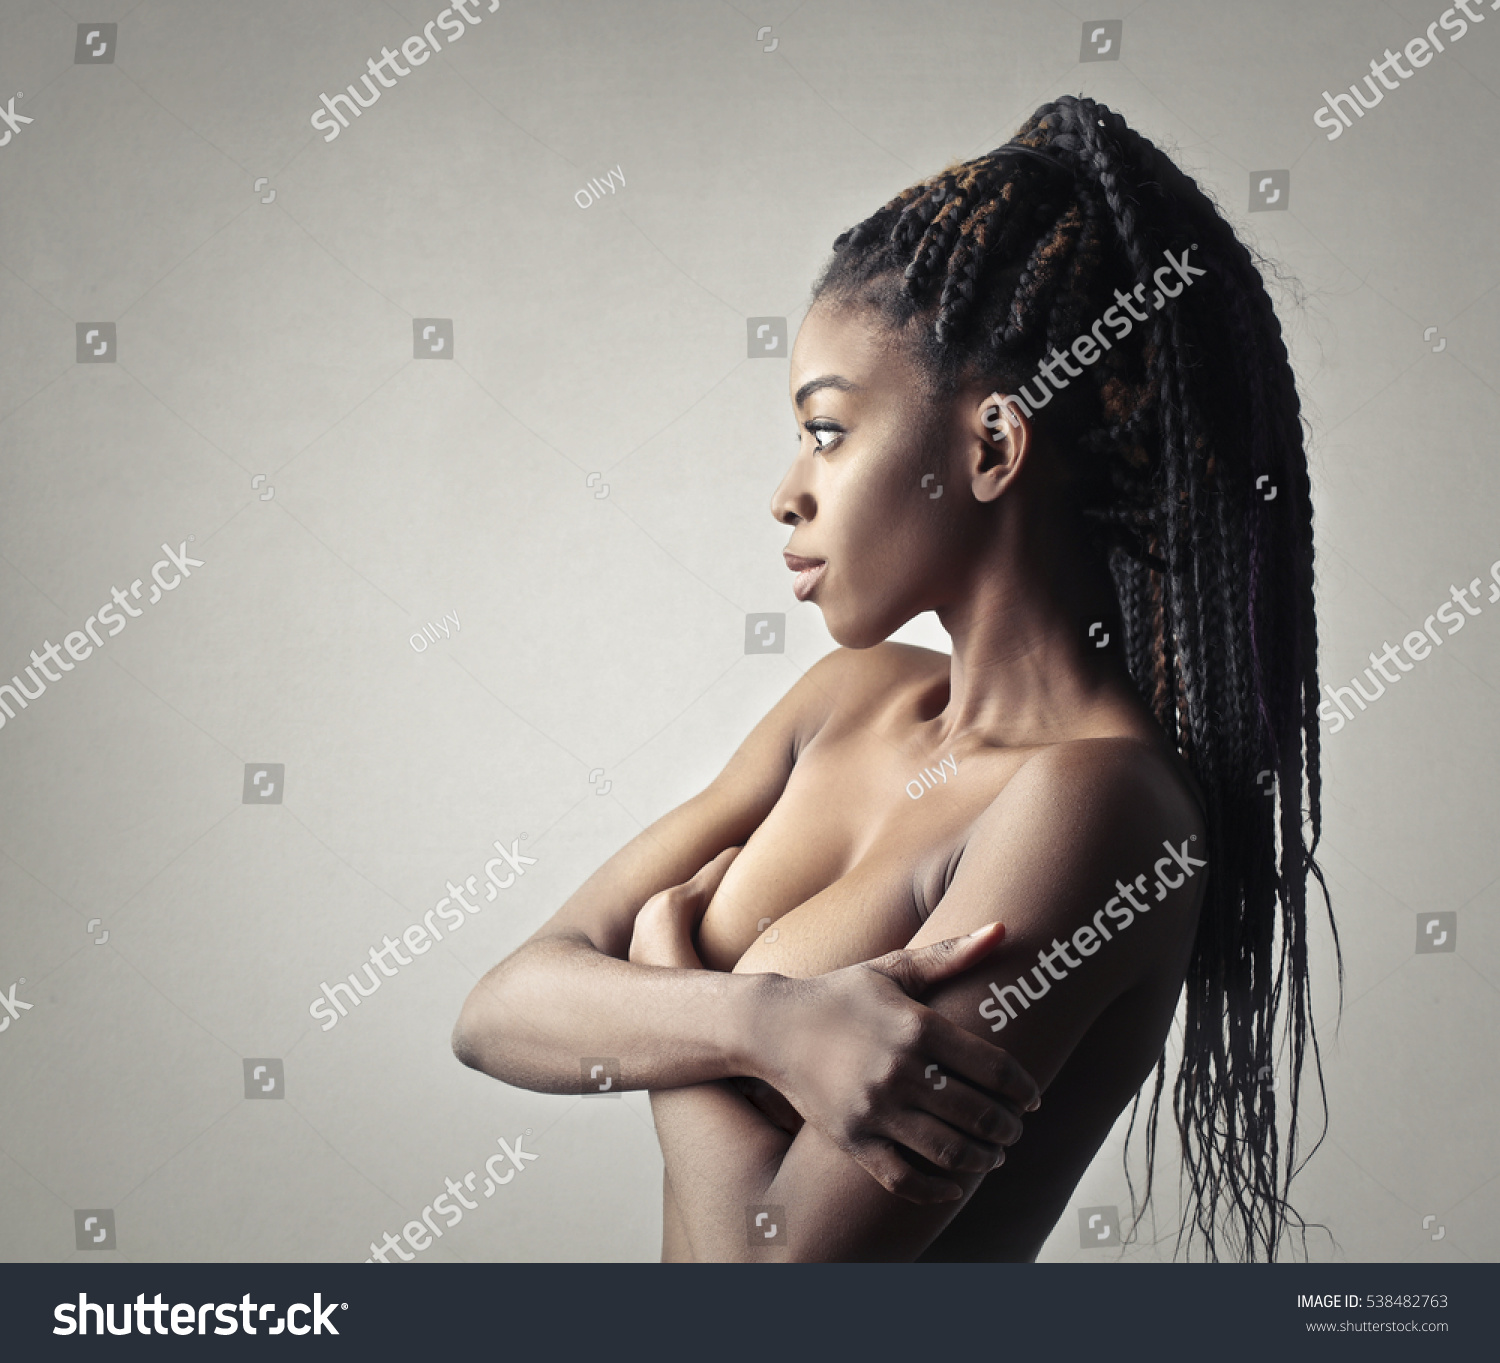 naked black girl on phone